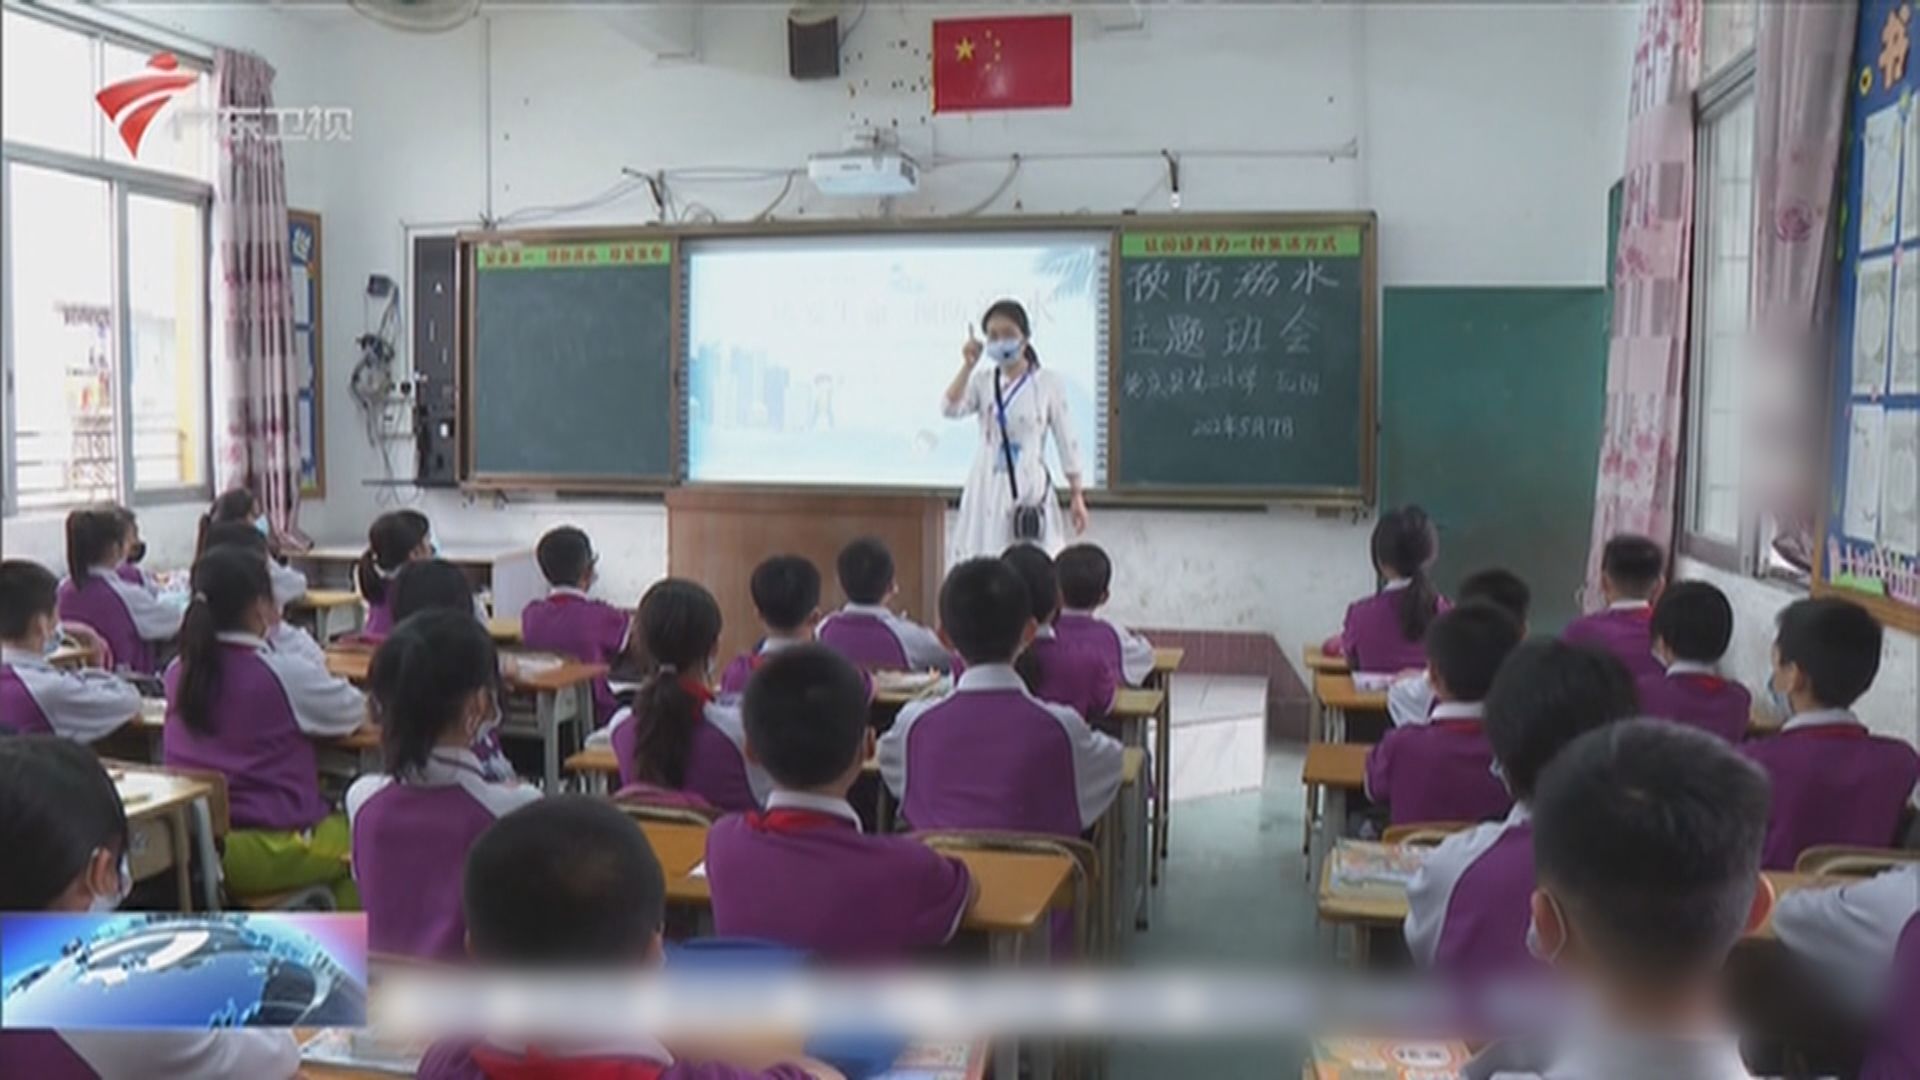 澳門、廣州及珠海宣布中小學幼兒園周三全日停課